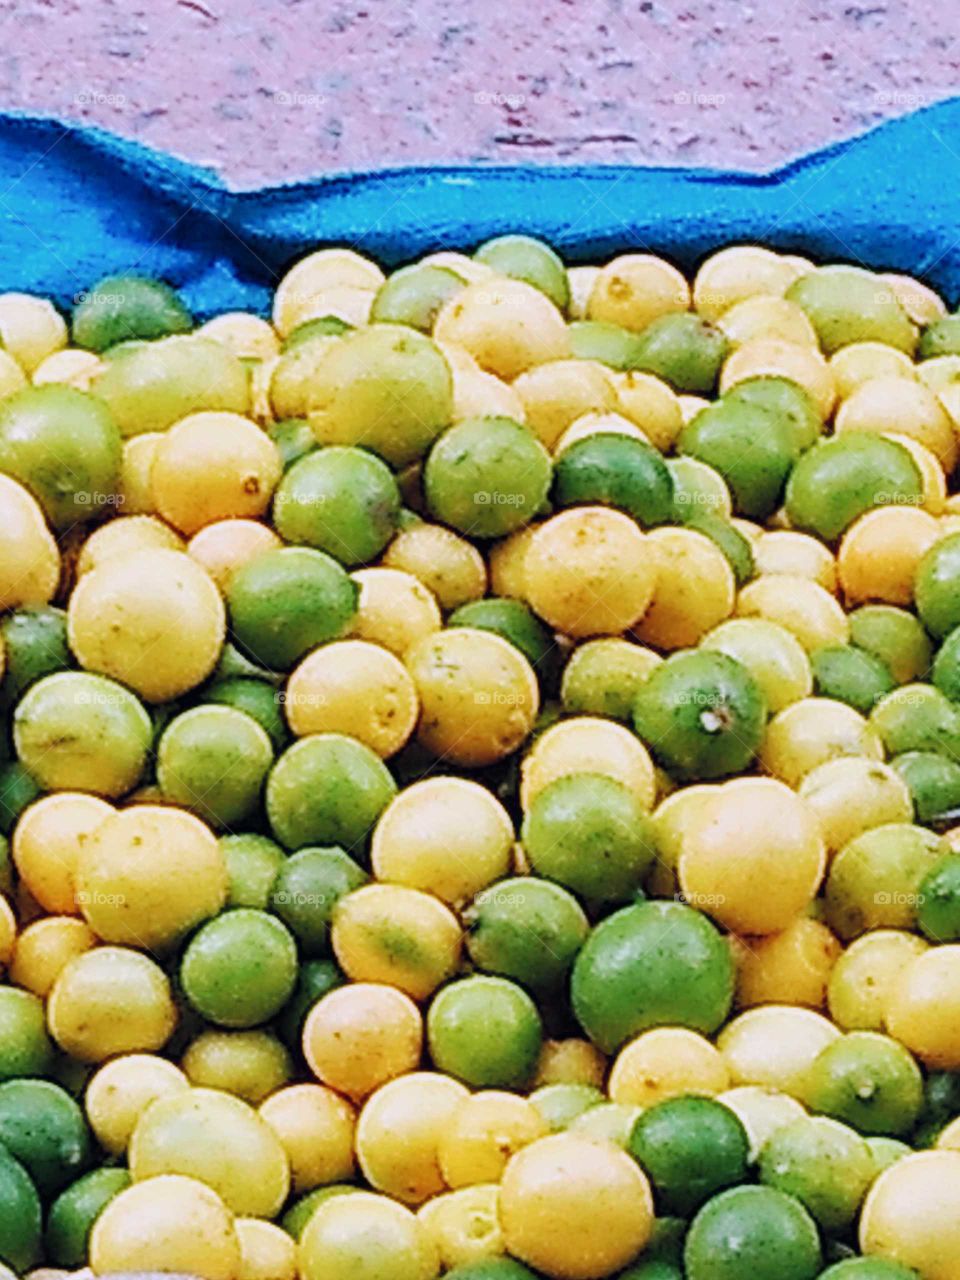 lemon in the market